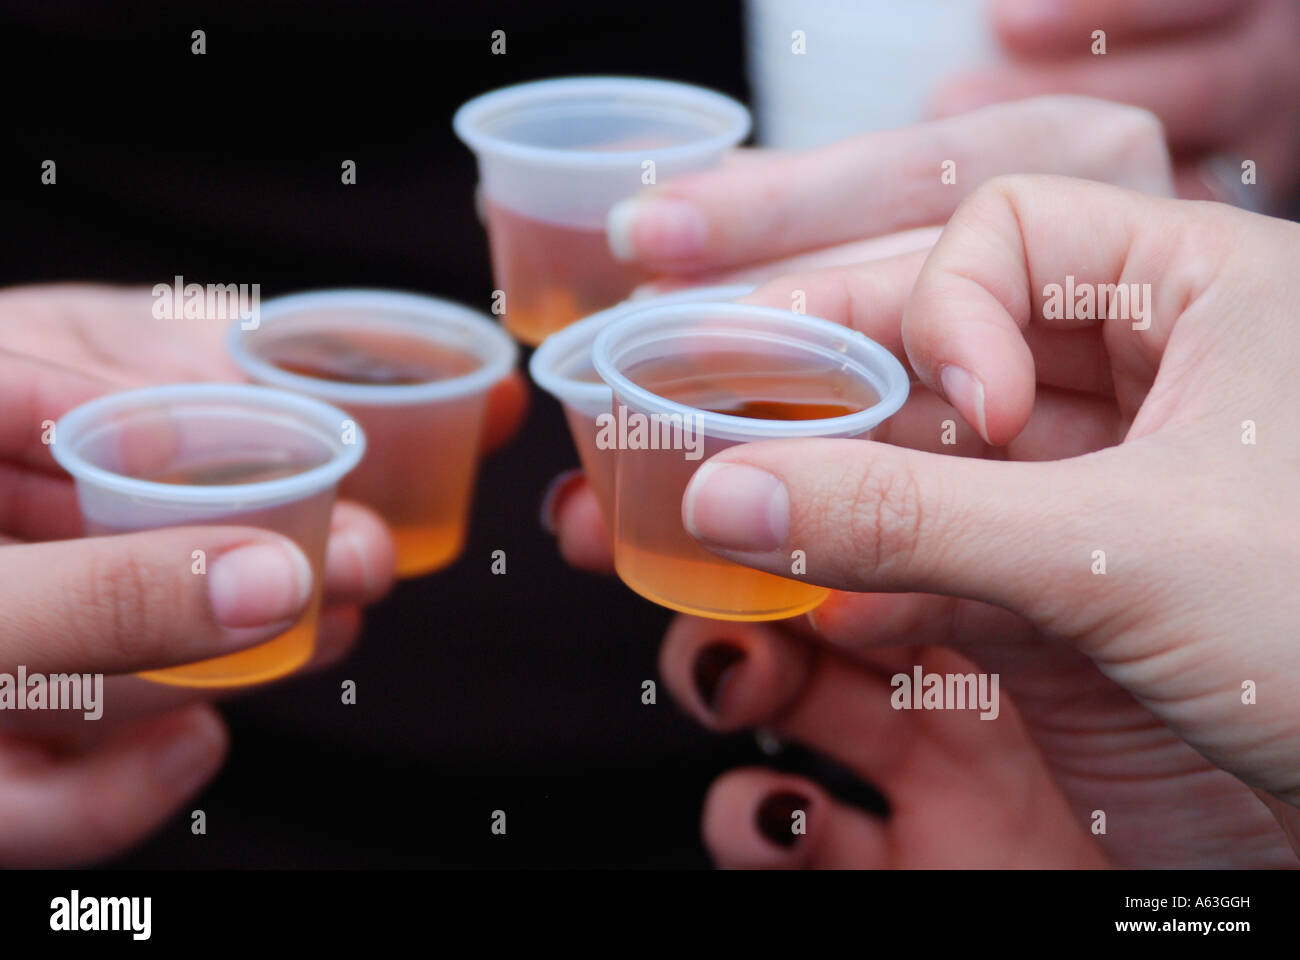 Dettaglio delle mani che tengono la gelatina alcolica bevande appena prima di essere consumati Foto Stock